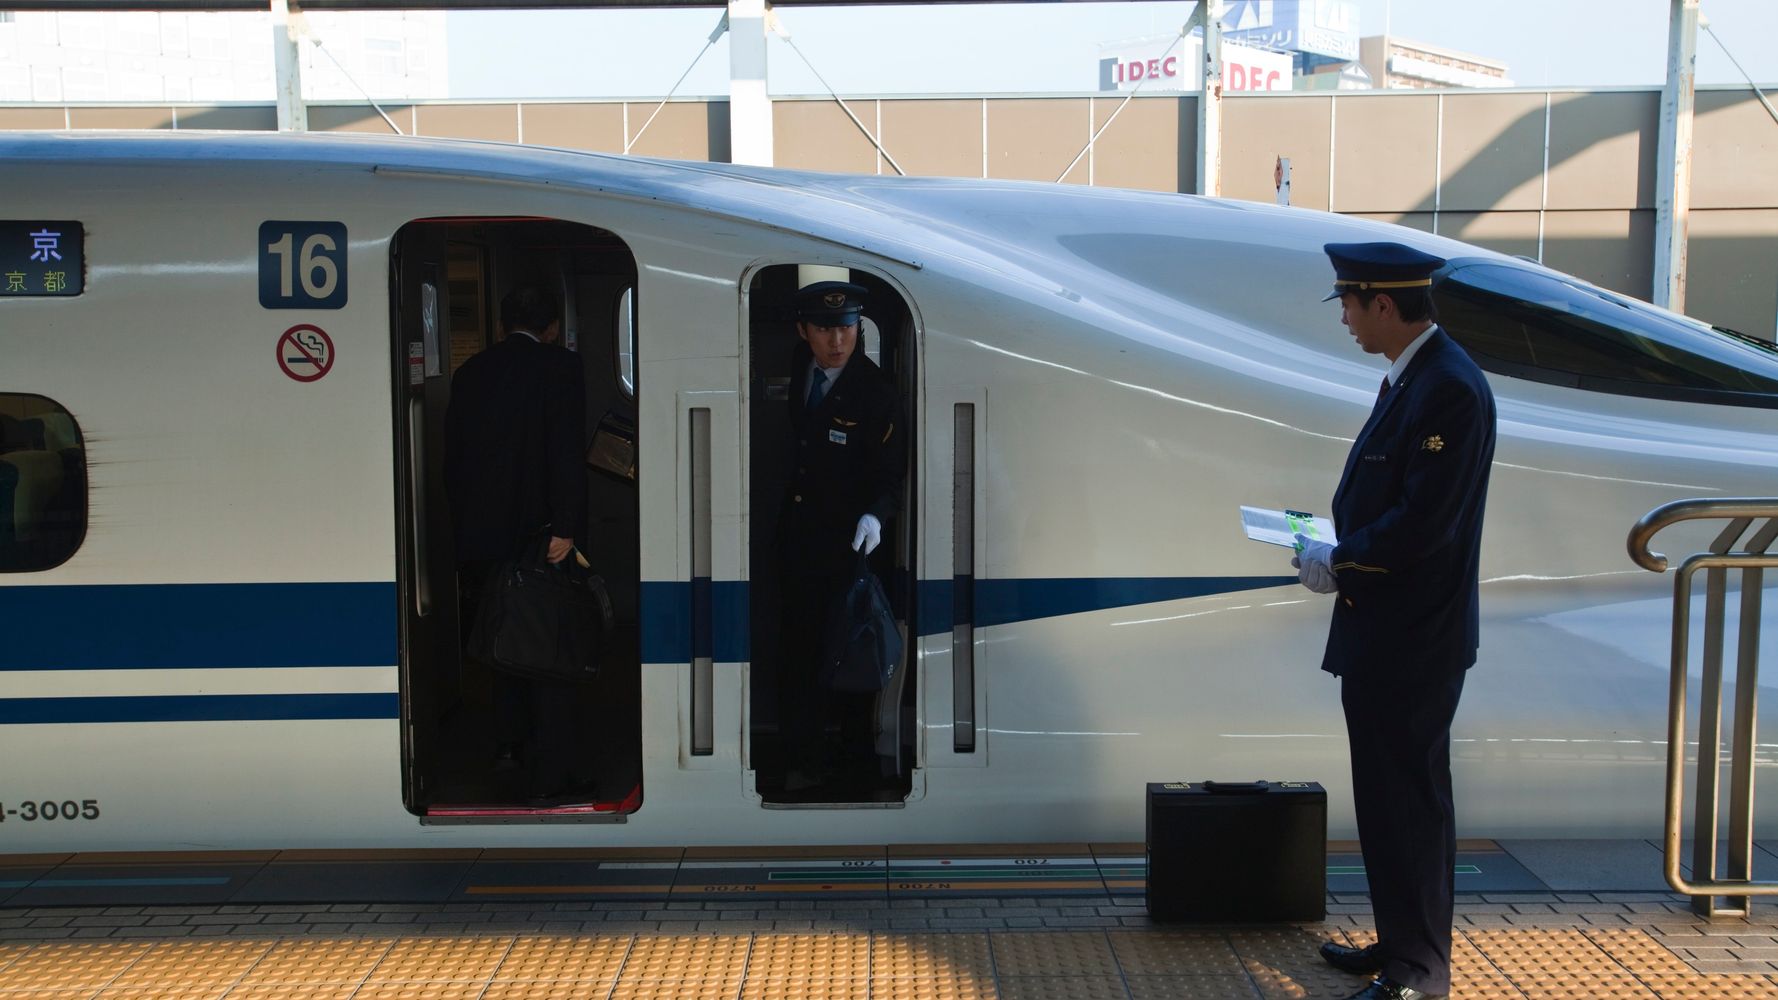 新幹線 こだま 0人乗せずに出発進行 メートル戻って仕切り直し 名古屋駅で ハフポスト